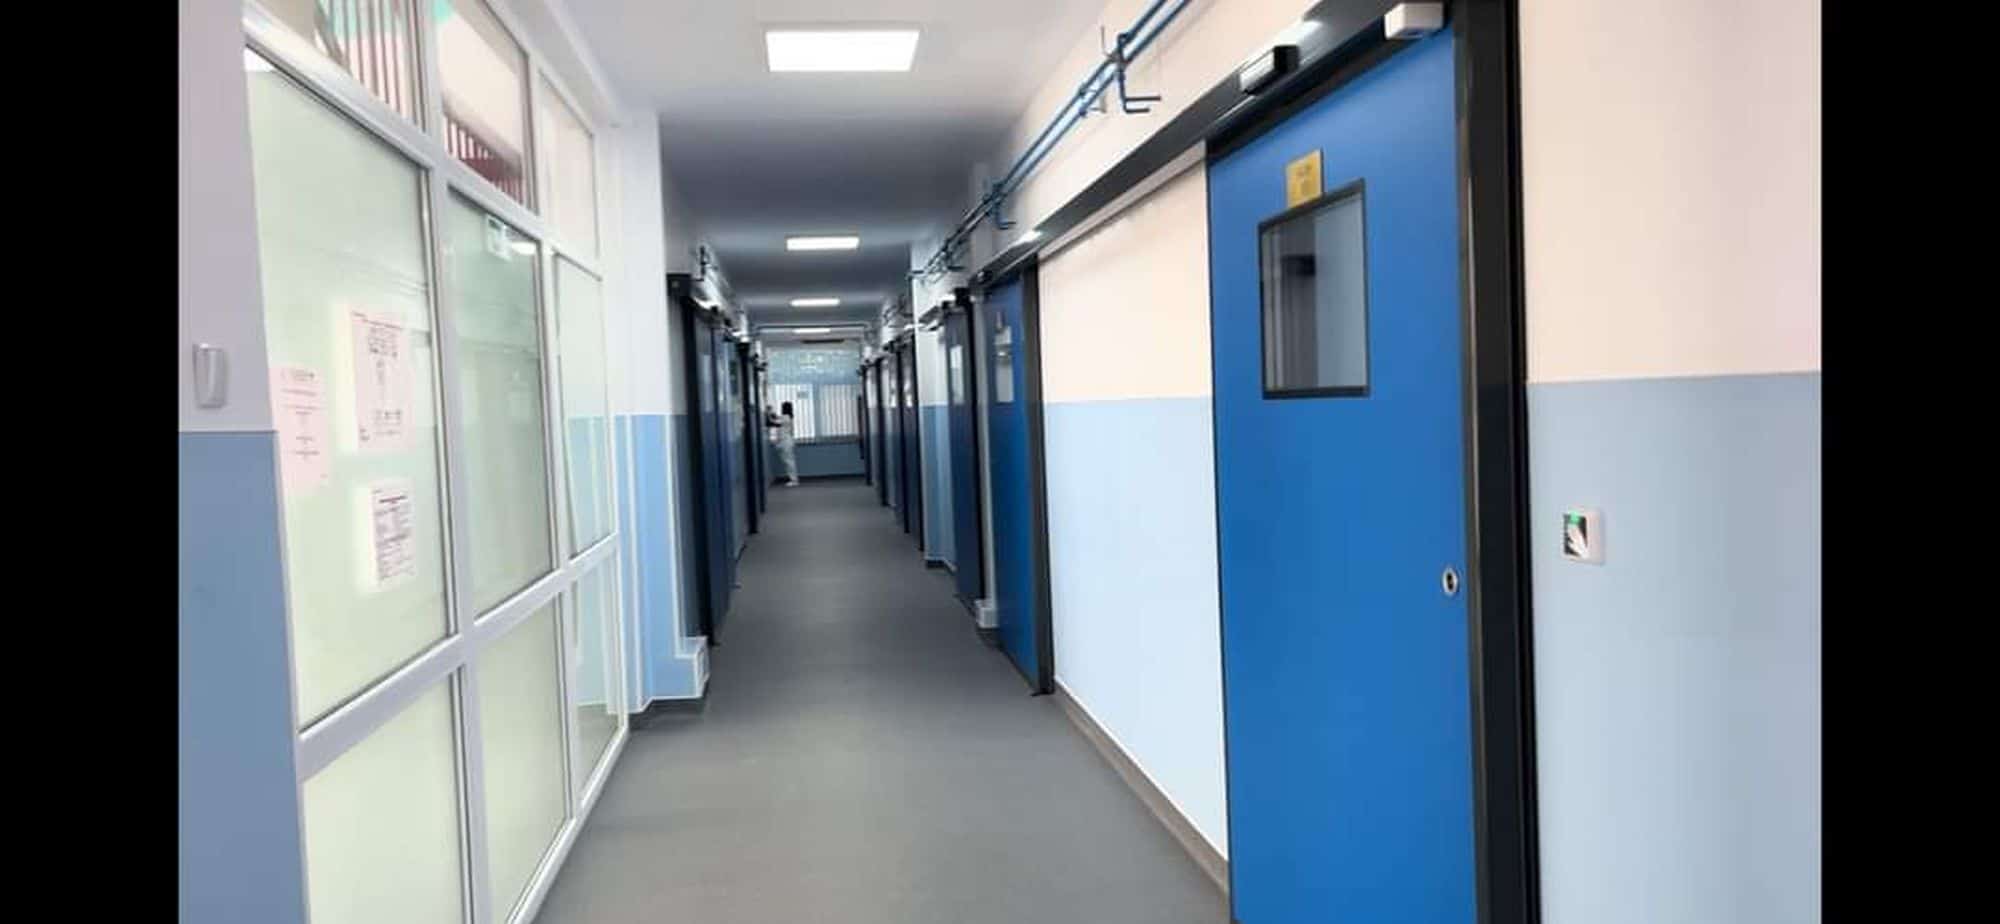 Acces sigur si curat in sectia modernizata de medicina interna a Spitalului Municipal Orsova cu usi Tormed de la KADRA 4